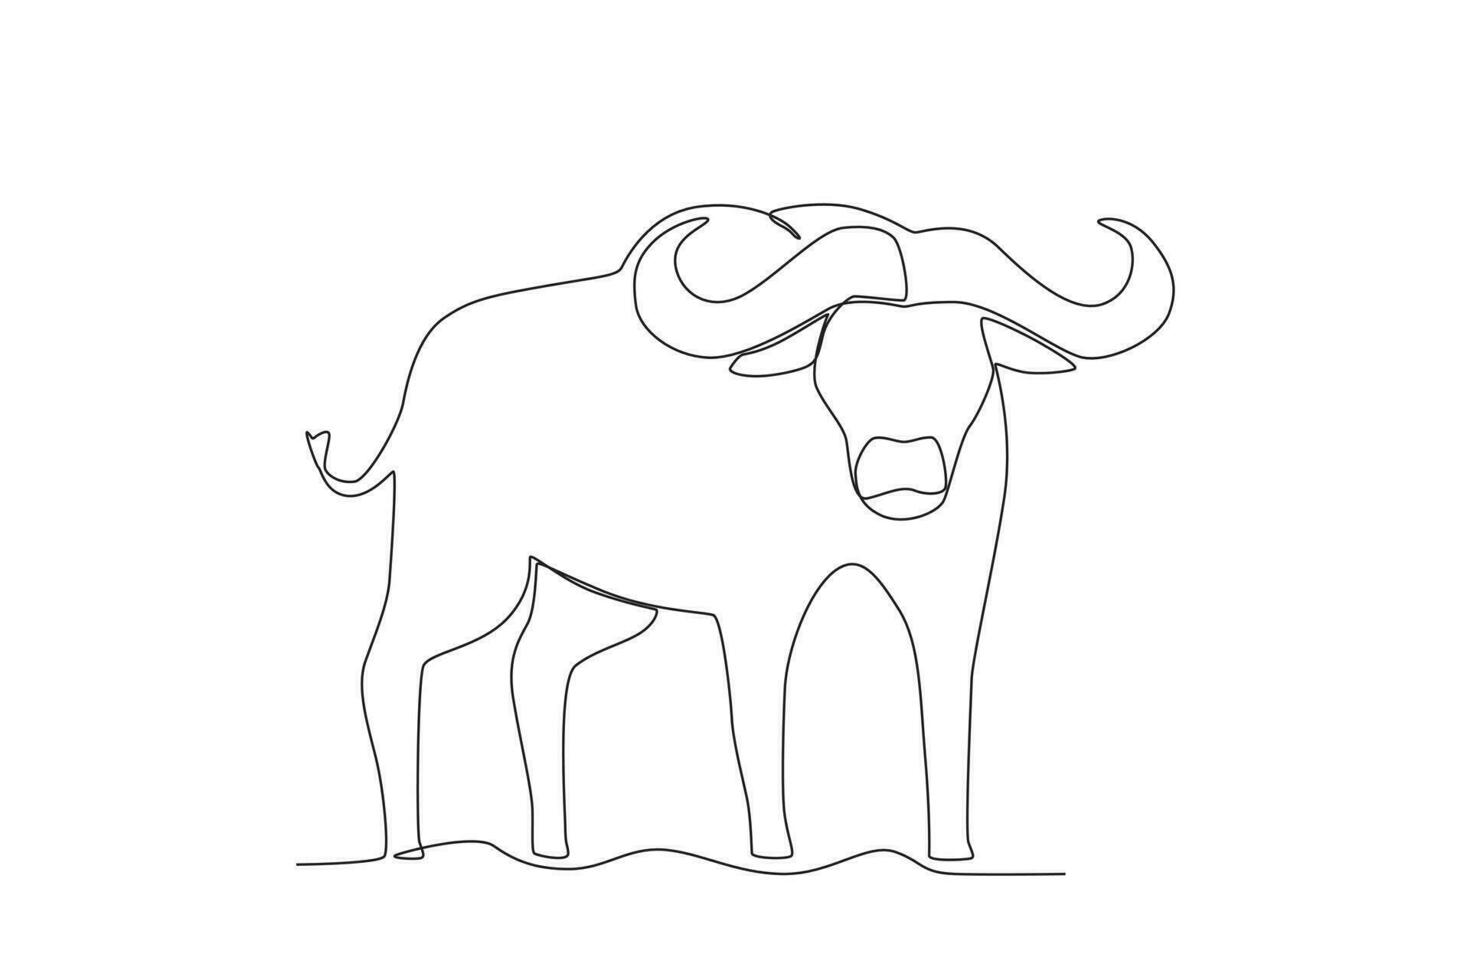 Single einer Linie Zeichnung von ein Büffel. kontinuierlich Linie zeichnen Design Grafik Vektor Illustration.